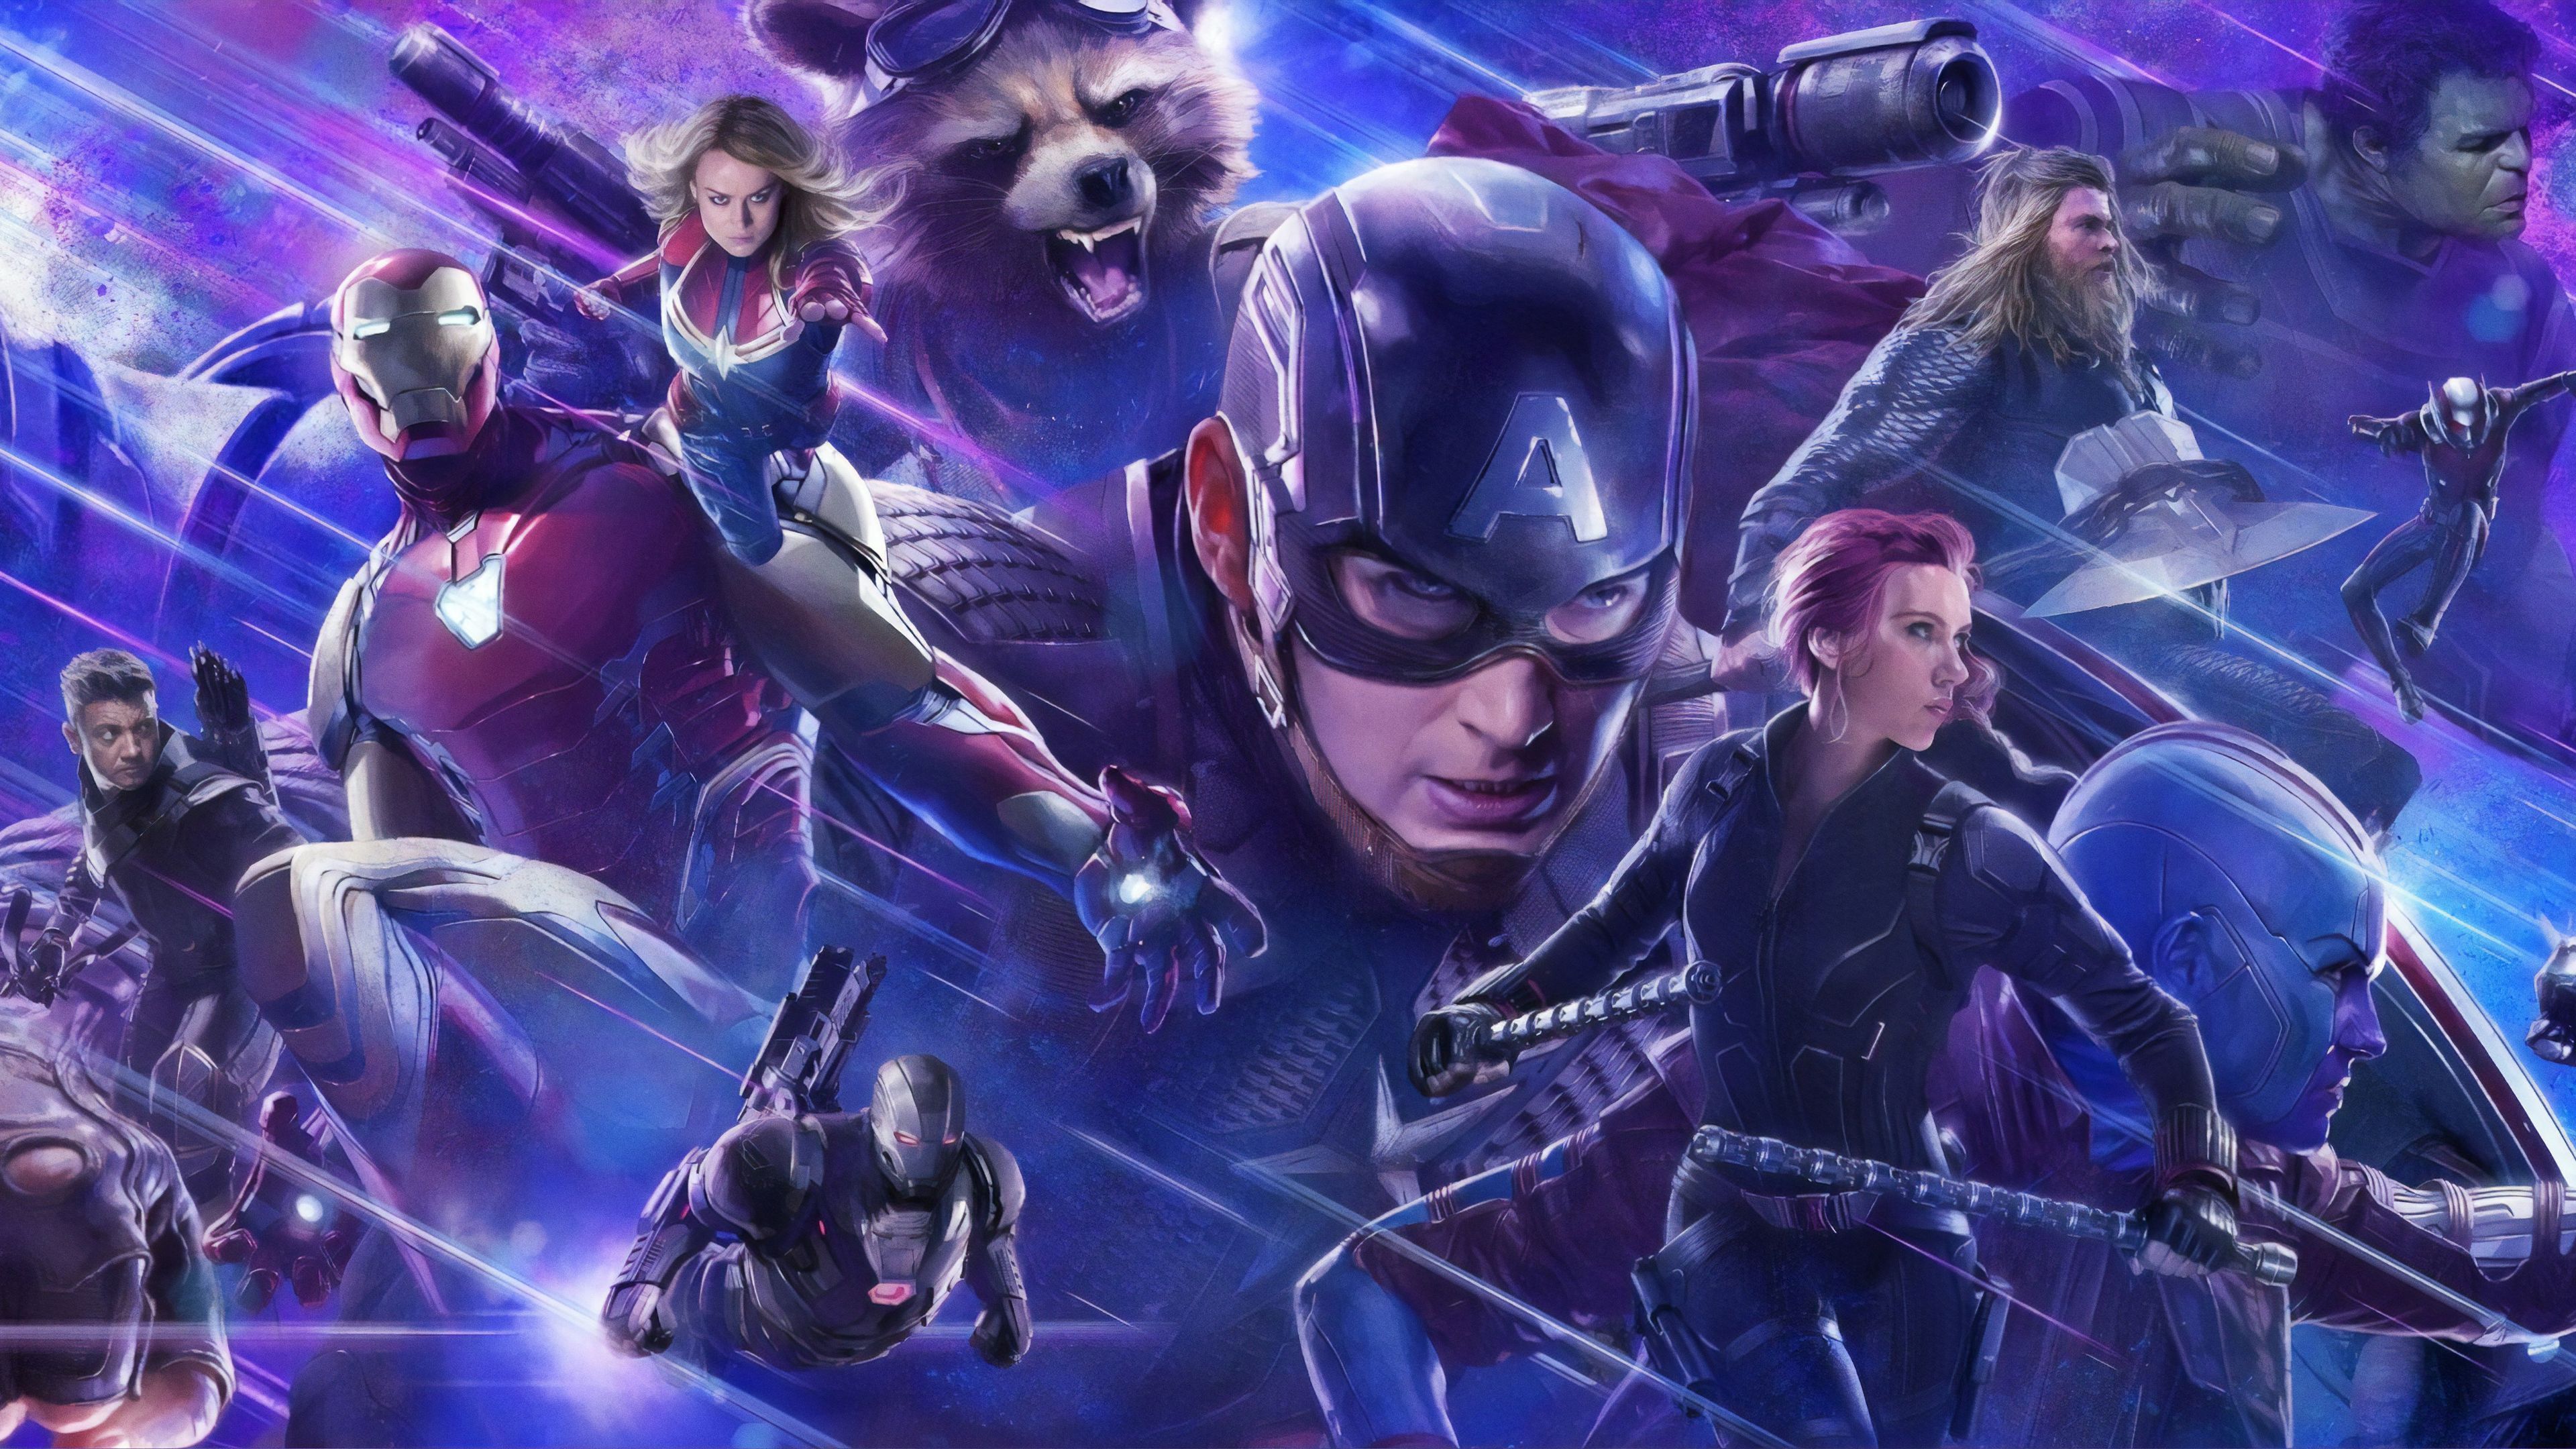 4k Avengers Endgame 2019 superhéroes fondos de pantalla, películas fondos de pantalla